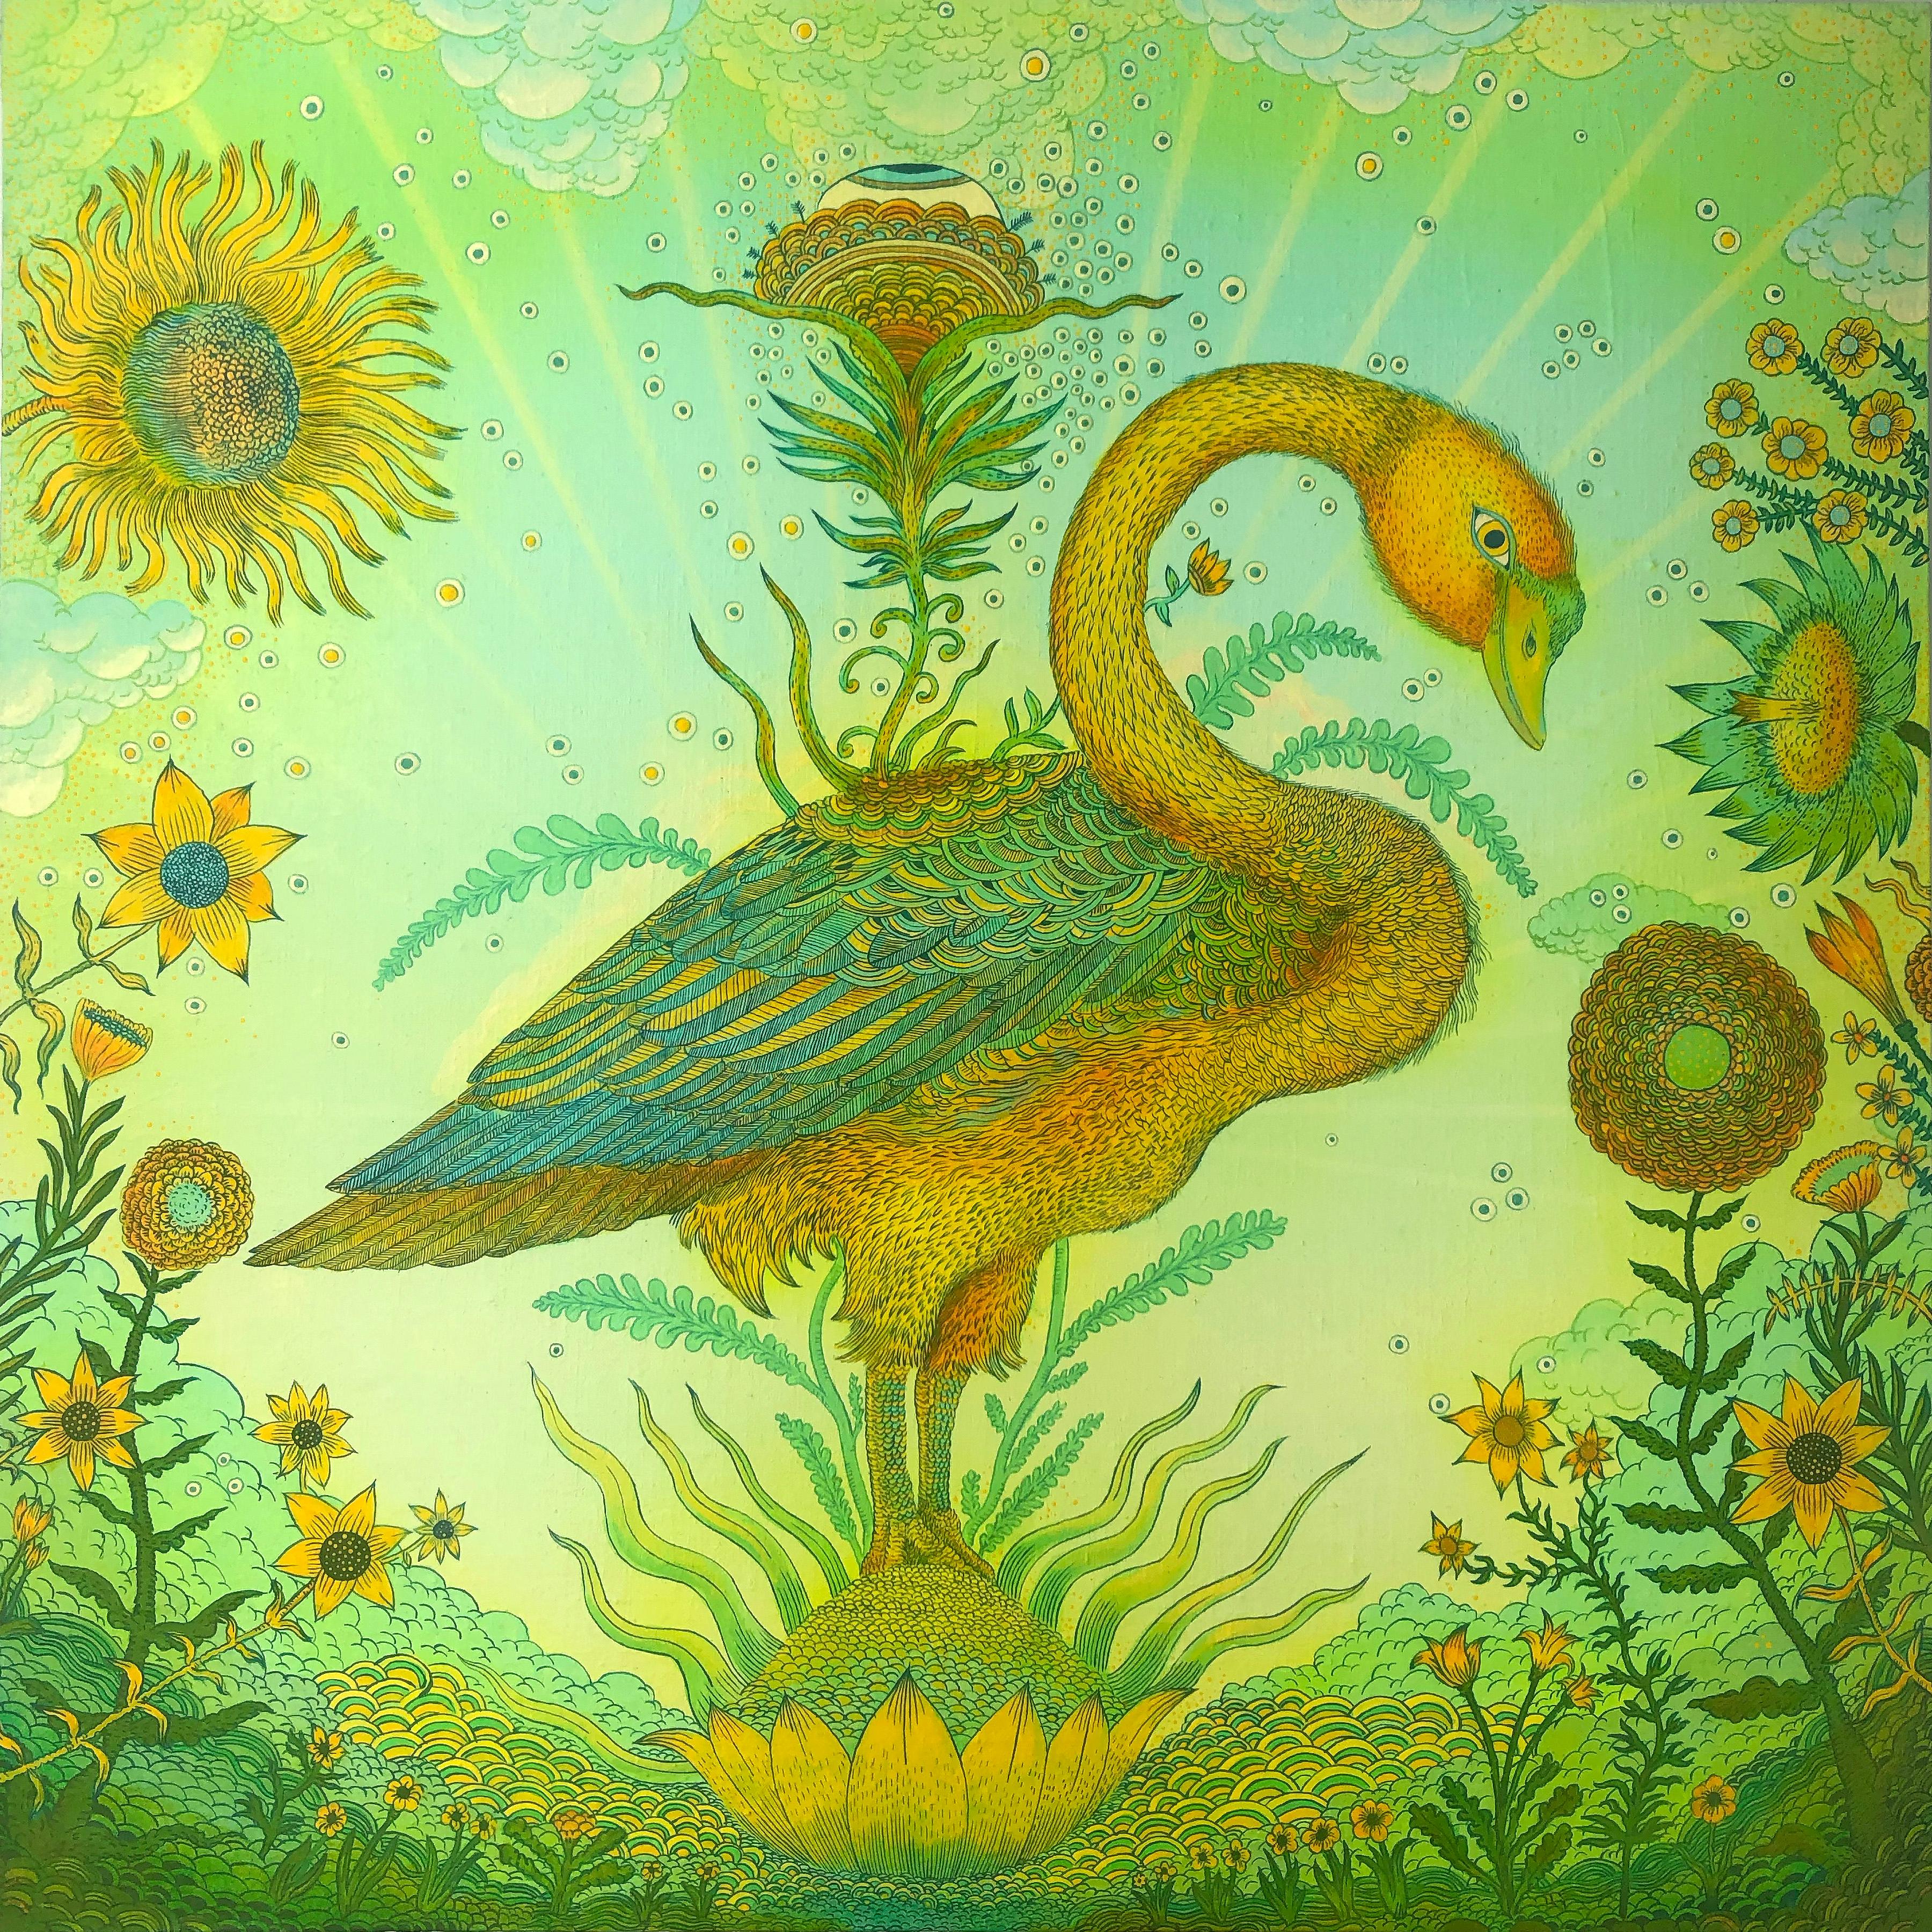 Golden Green Swan Event, Bird, Sunflowers, Clouds, Eye, Botanical Landscape